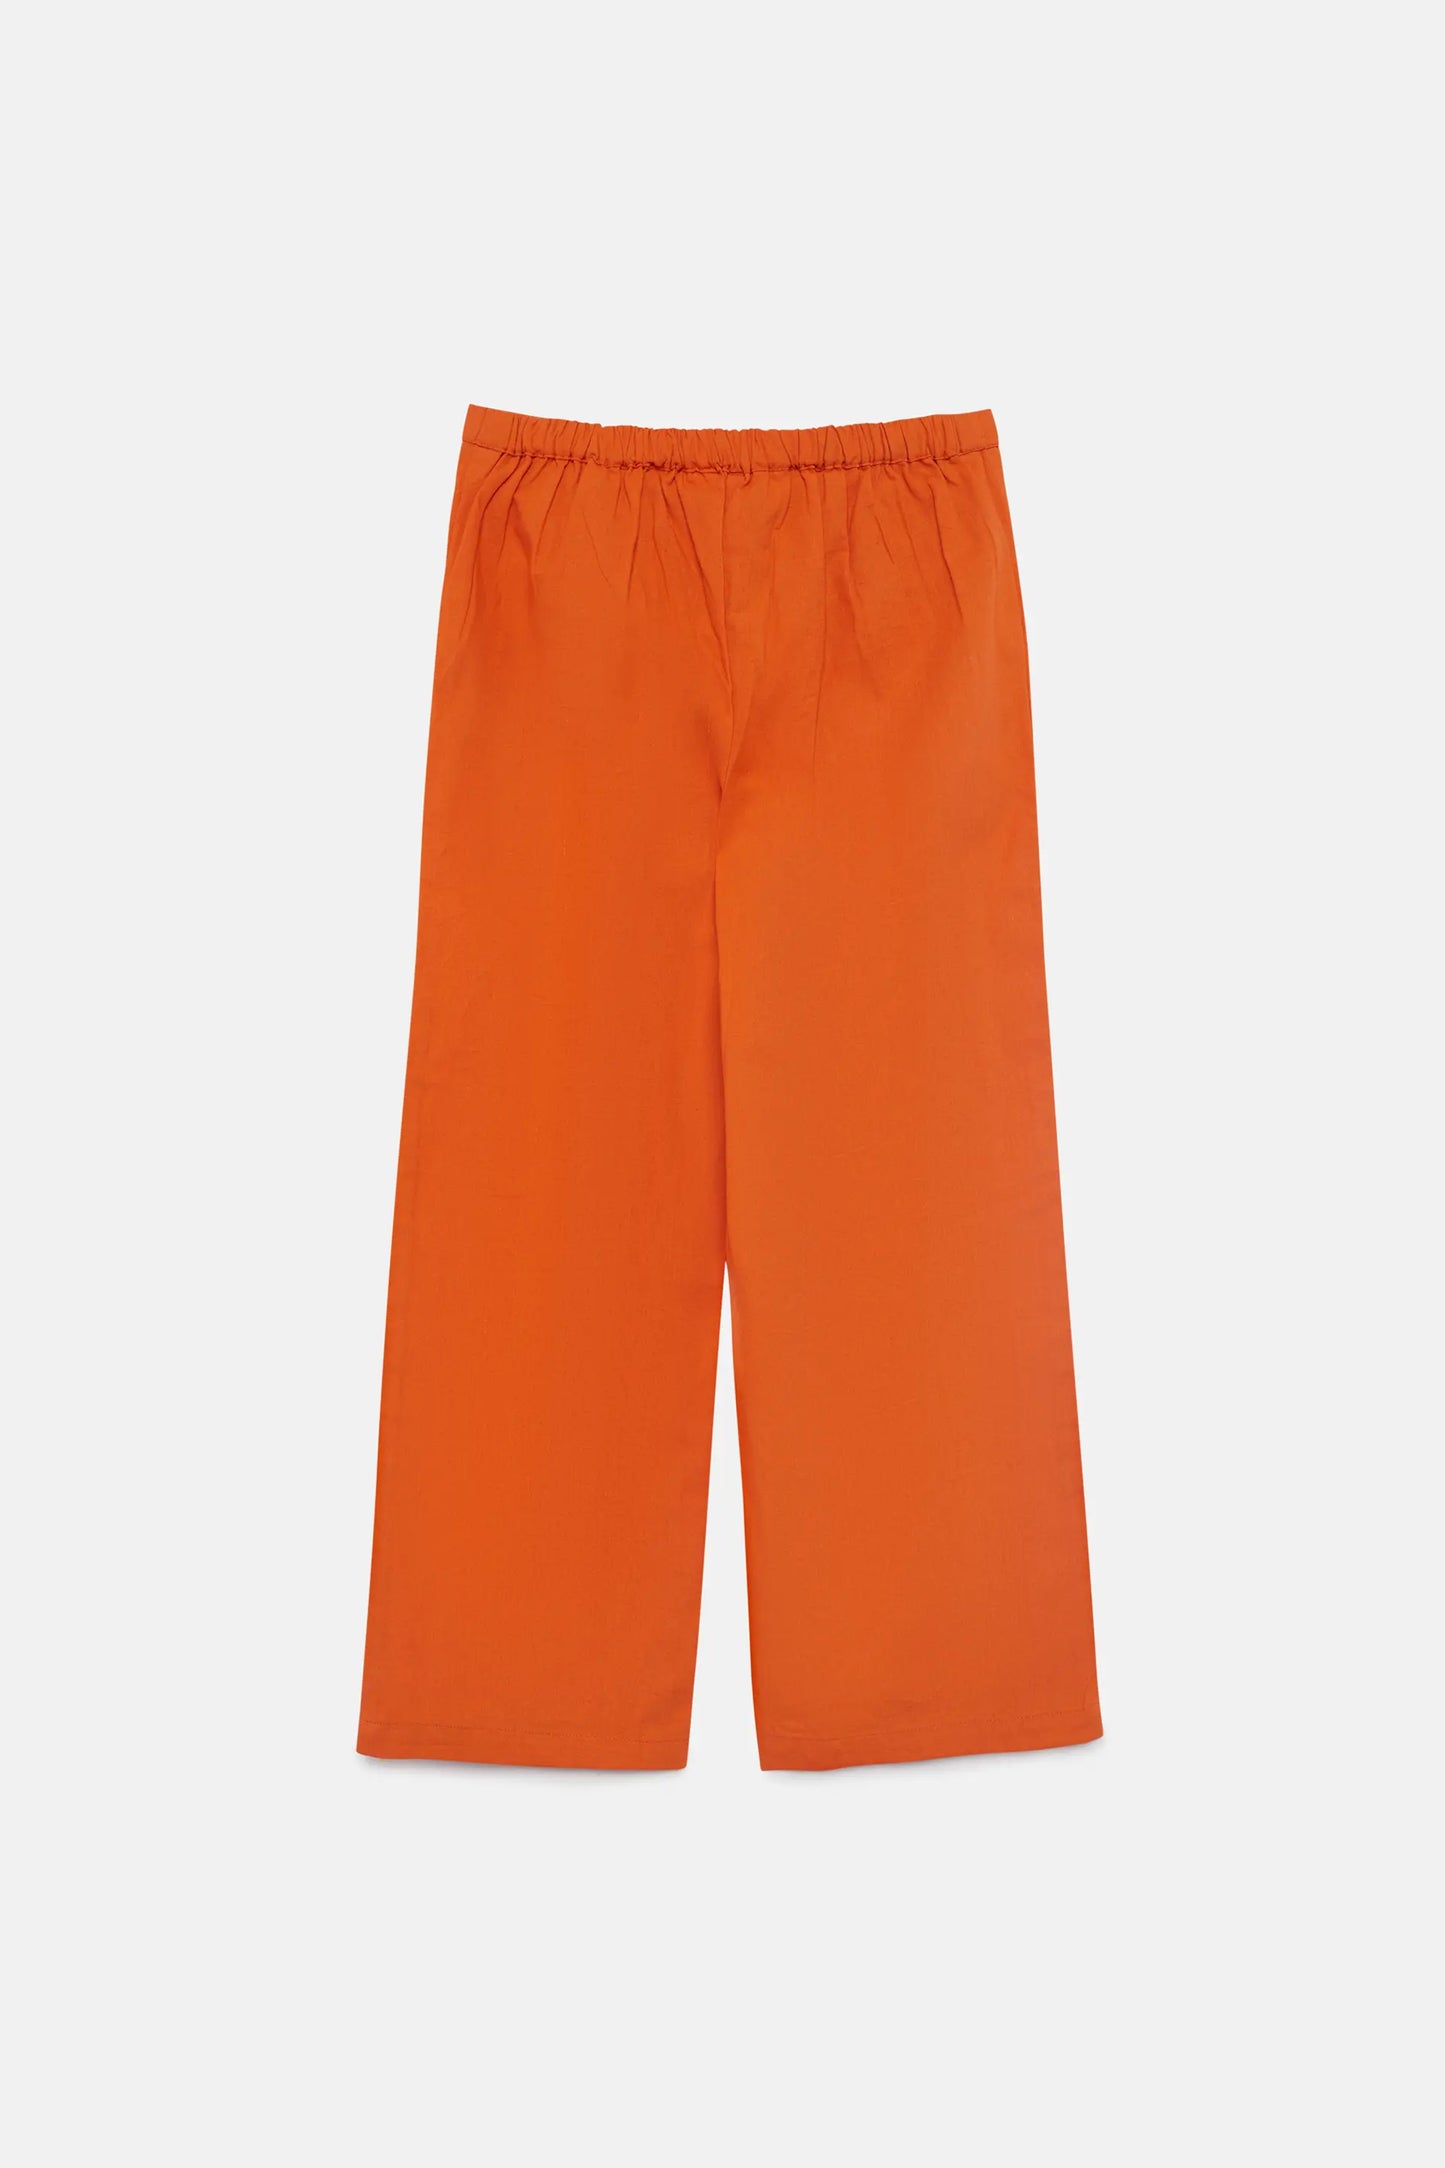 Pantalón de niña recto naranja